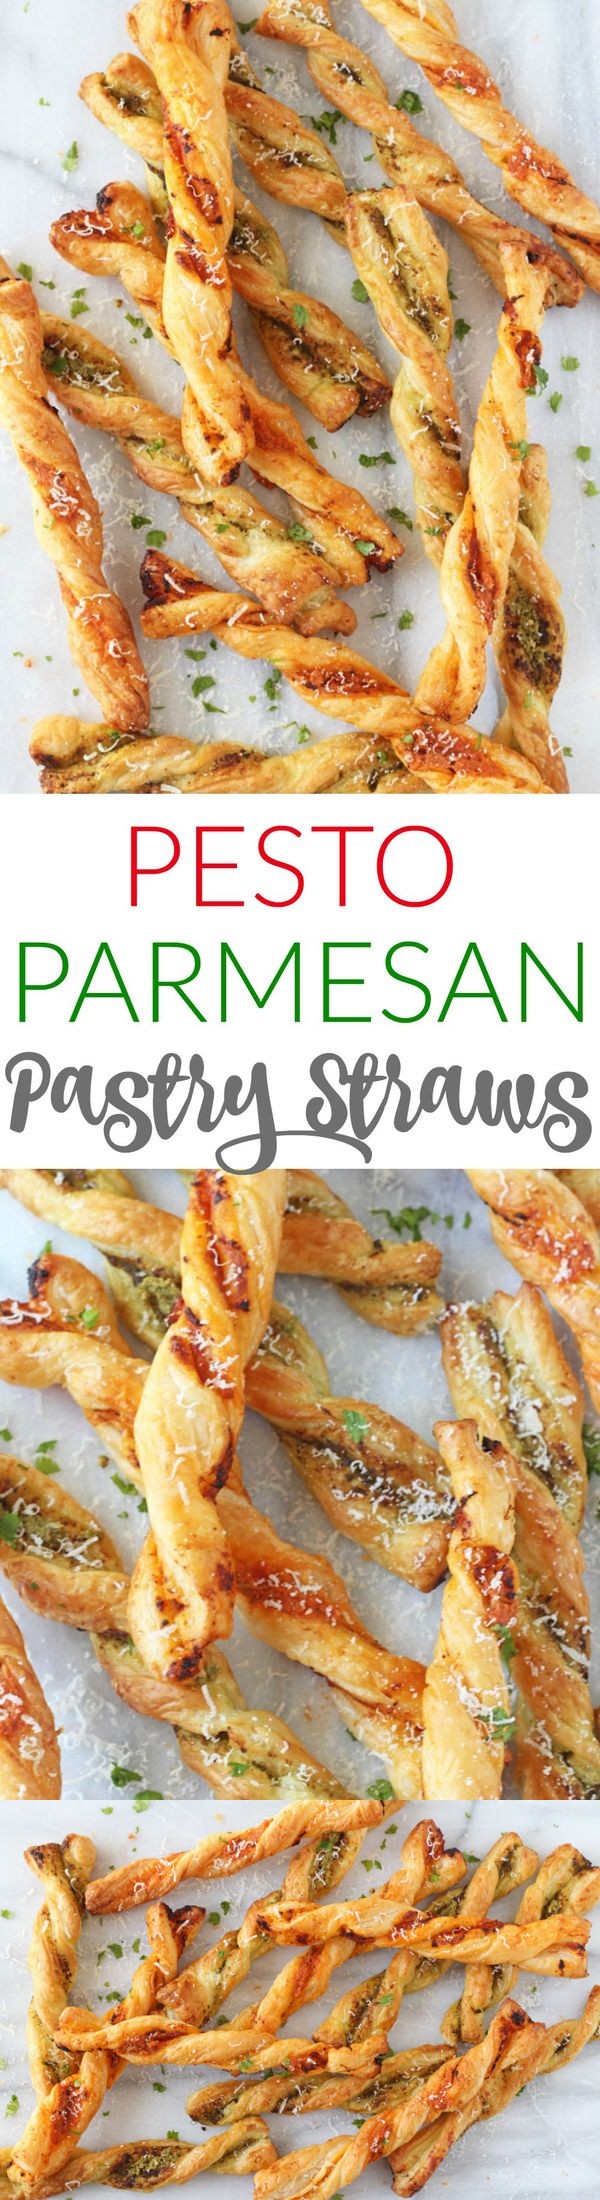 Pesto Parmesan Pastry Straws